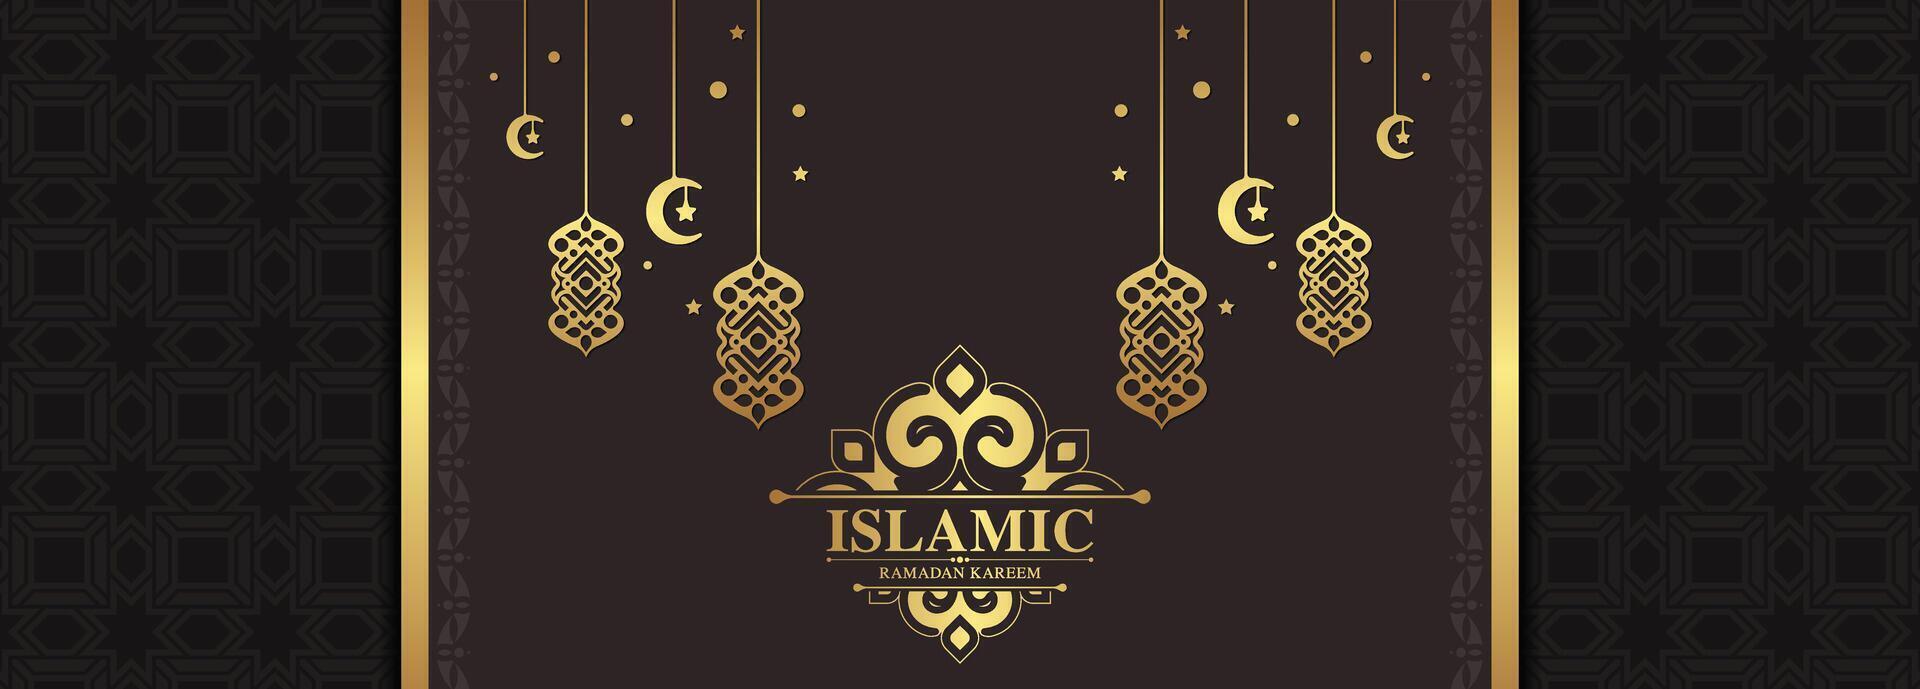 cartão de felicitações islâmico ramadan kareem de luxo vetor